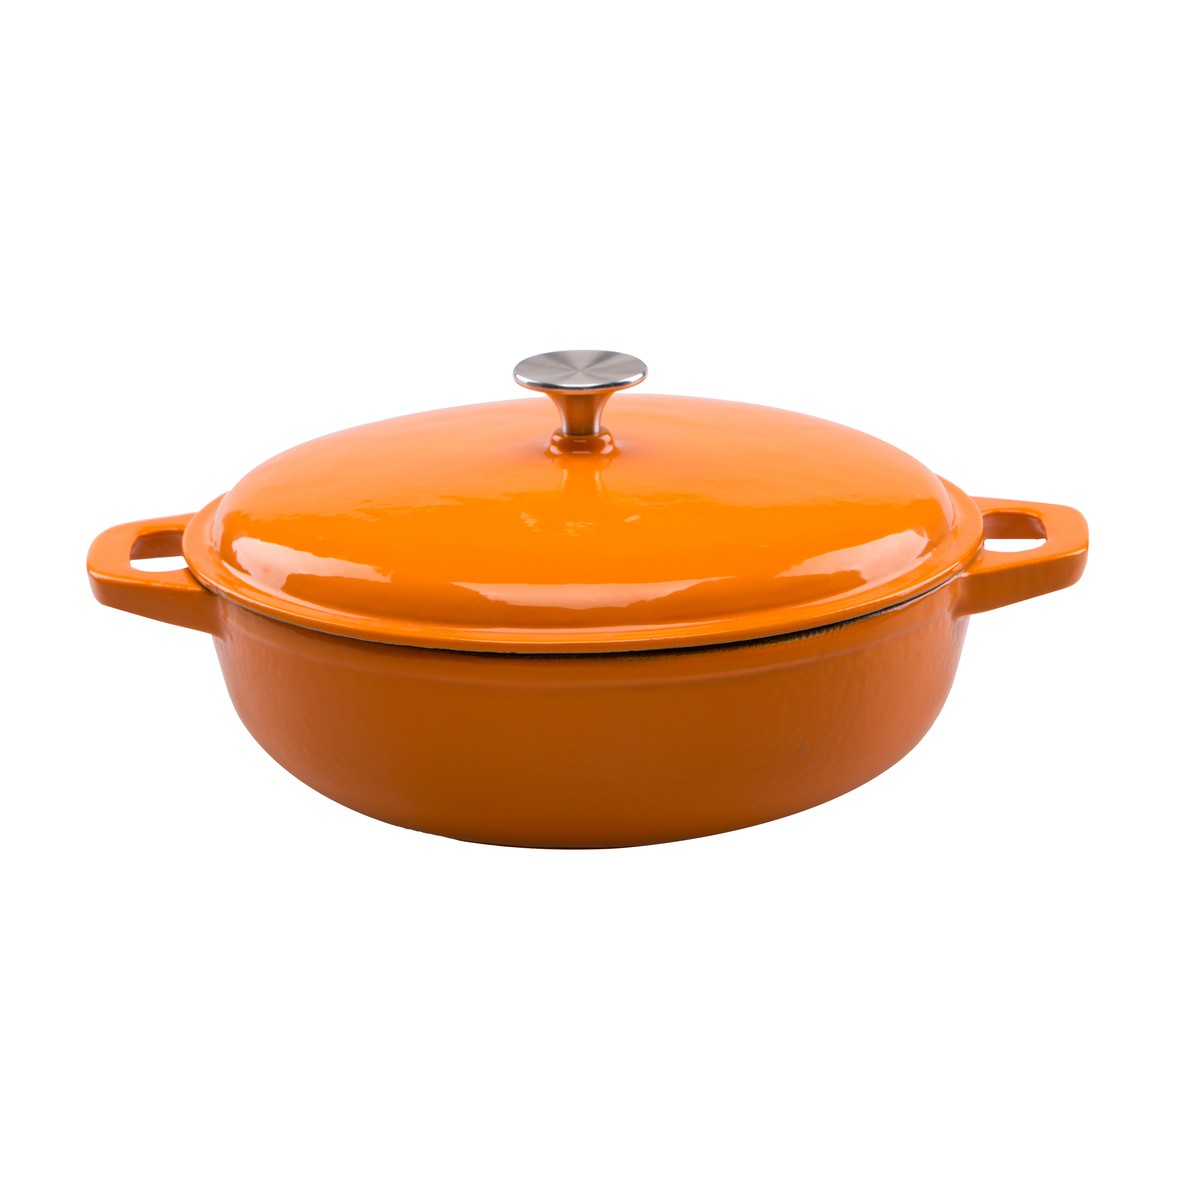   Sauteuse en fonte avec couvercle Orange 29x9.2cm